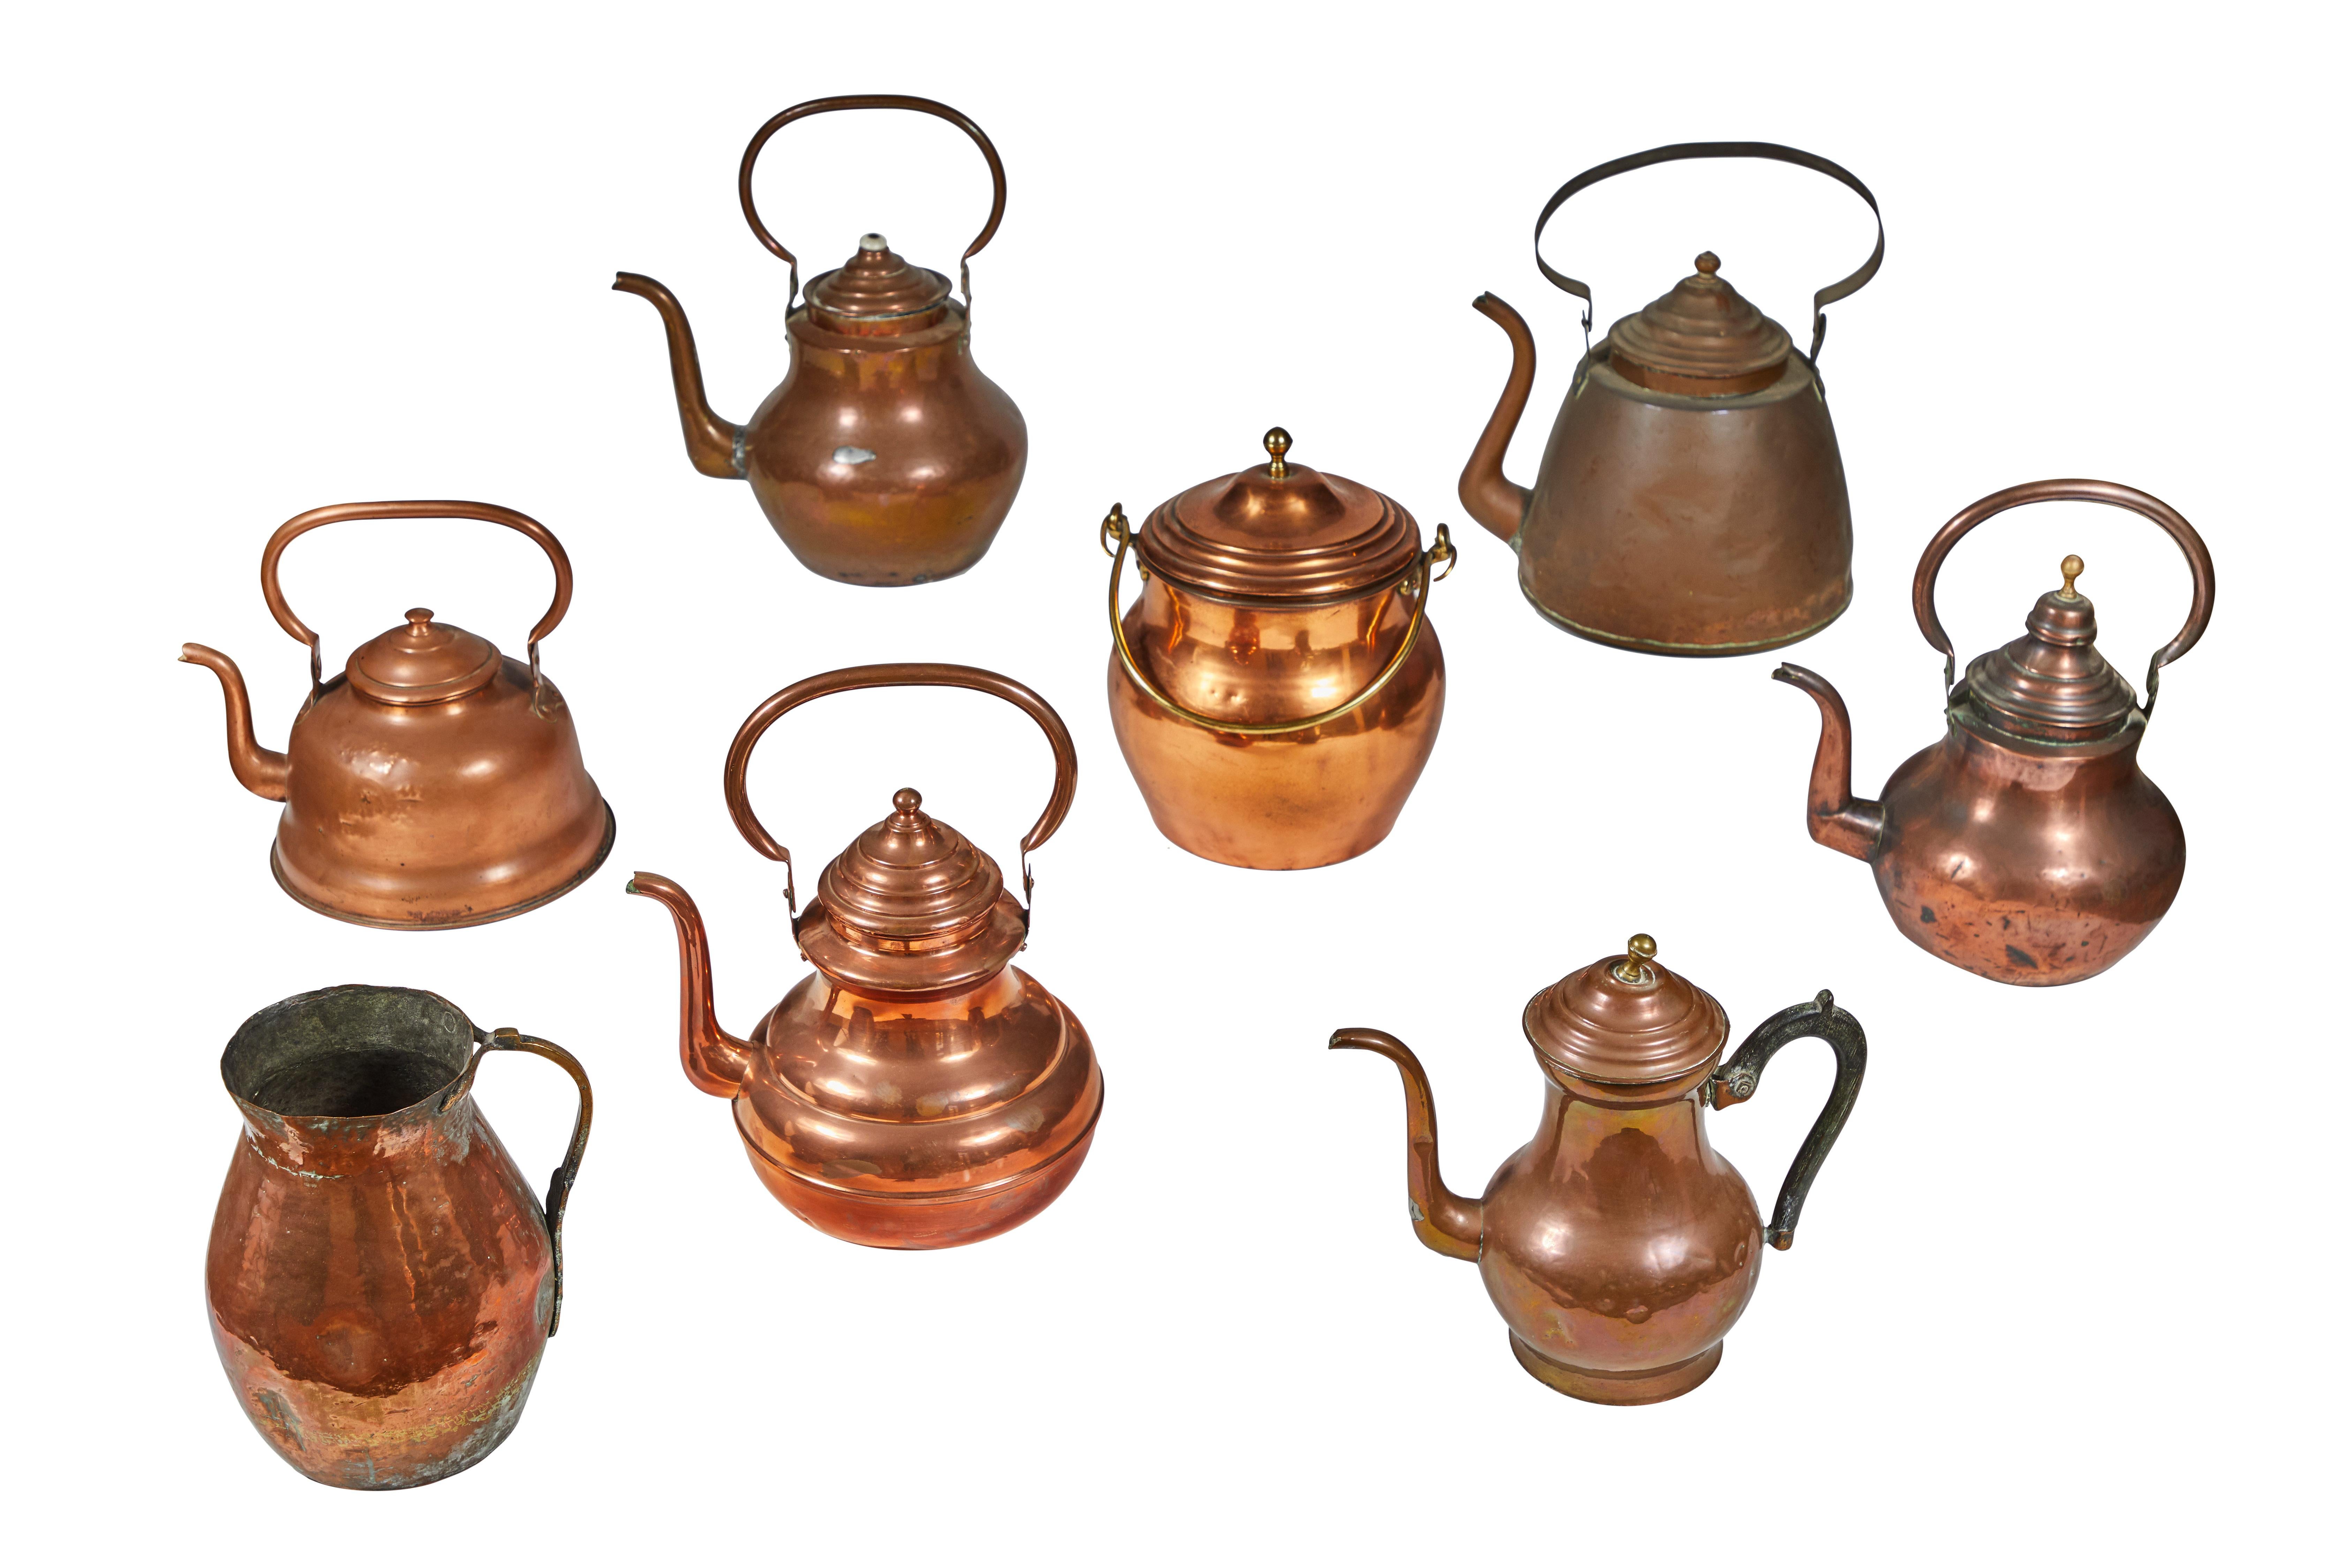 19th century copper pot.